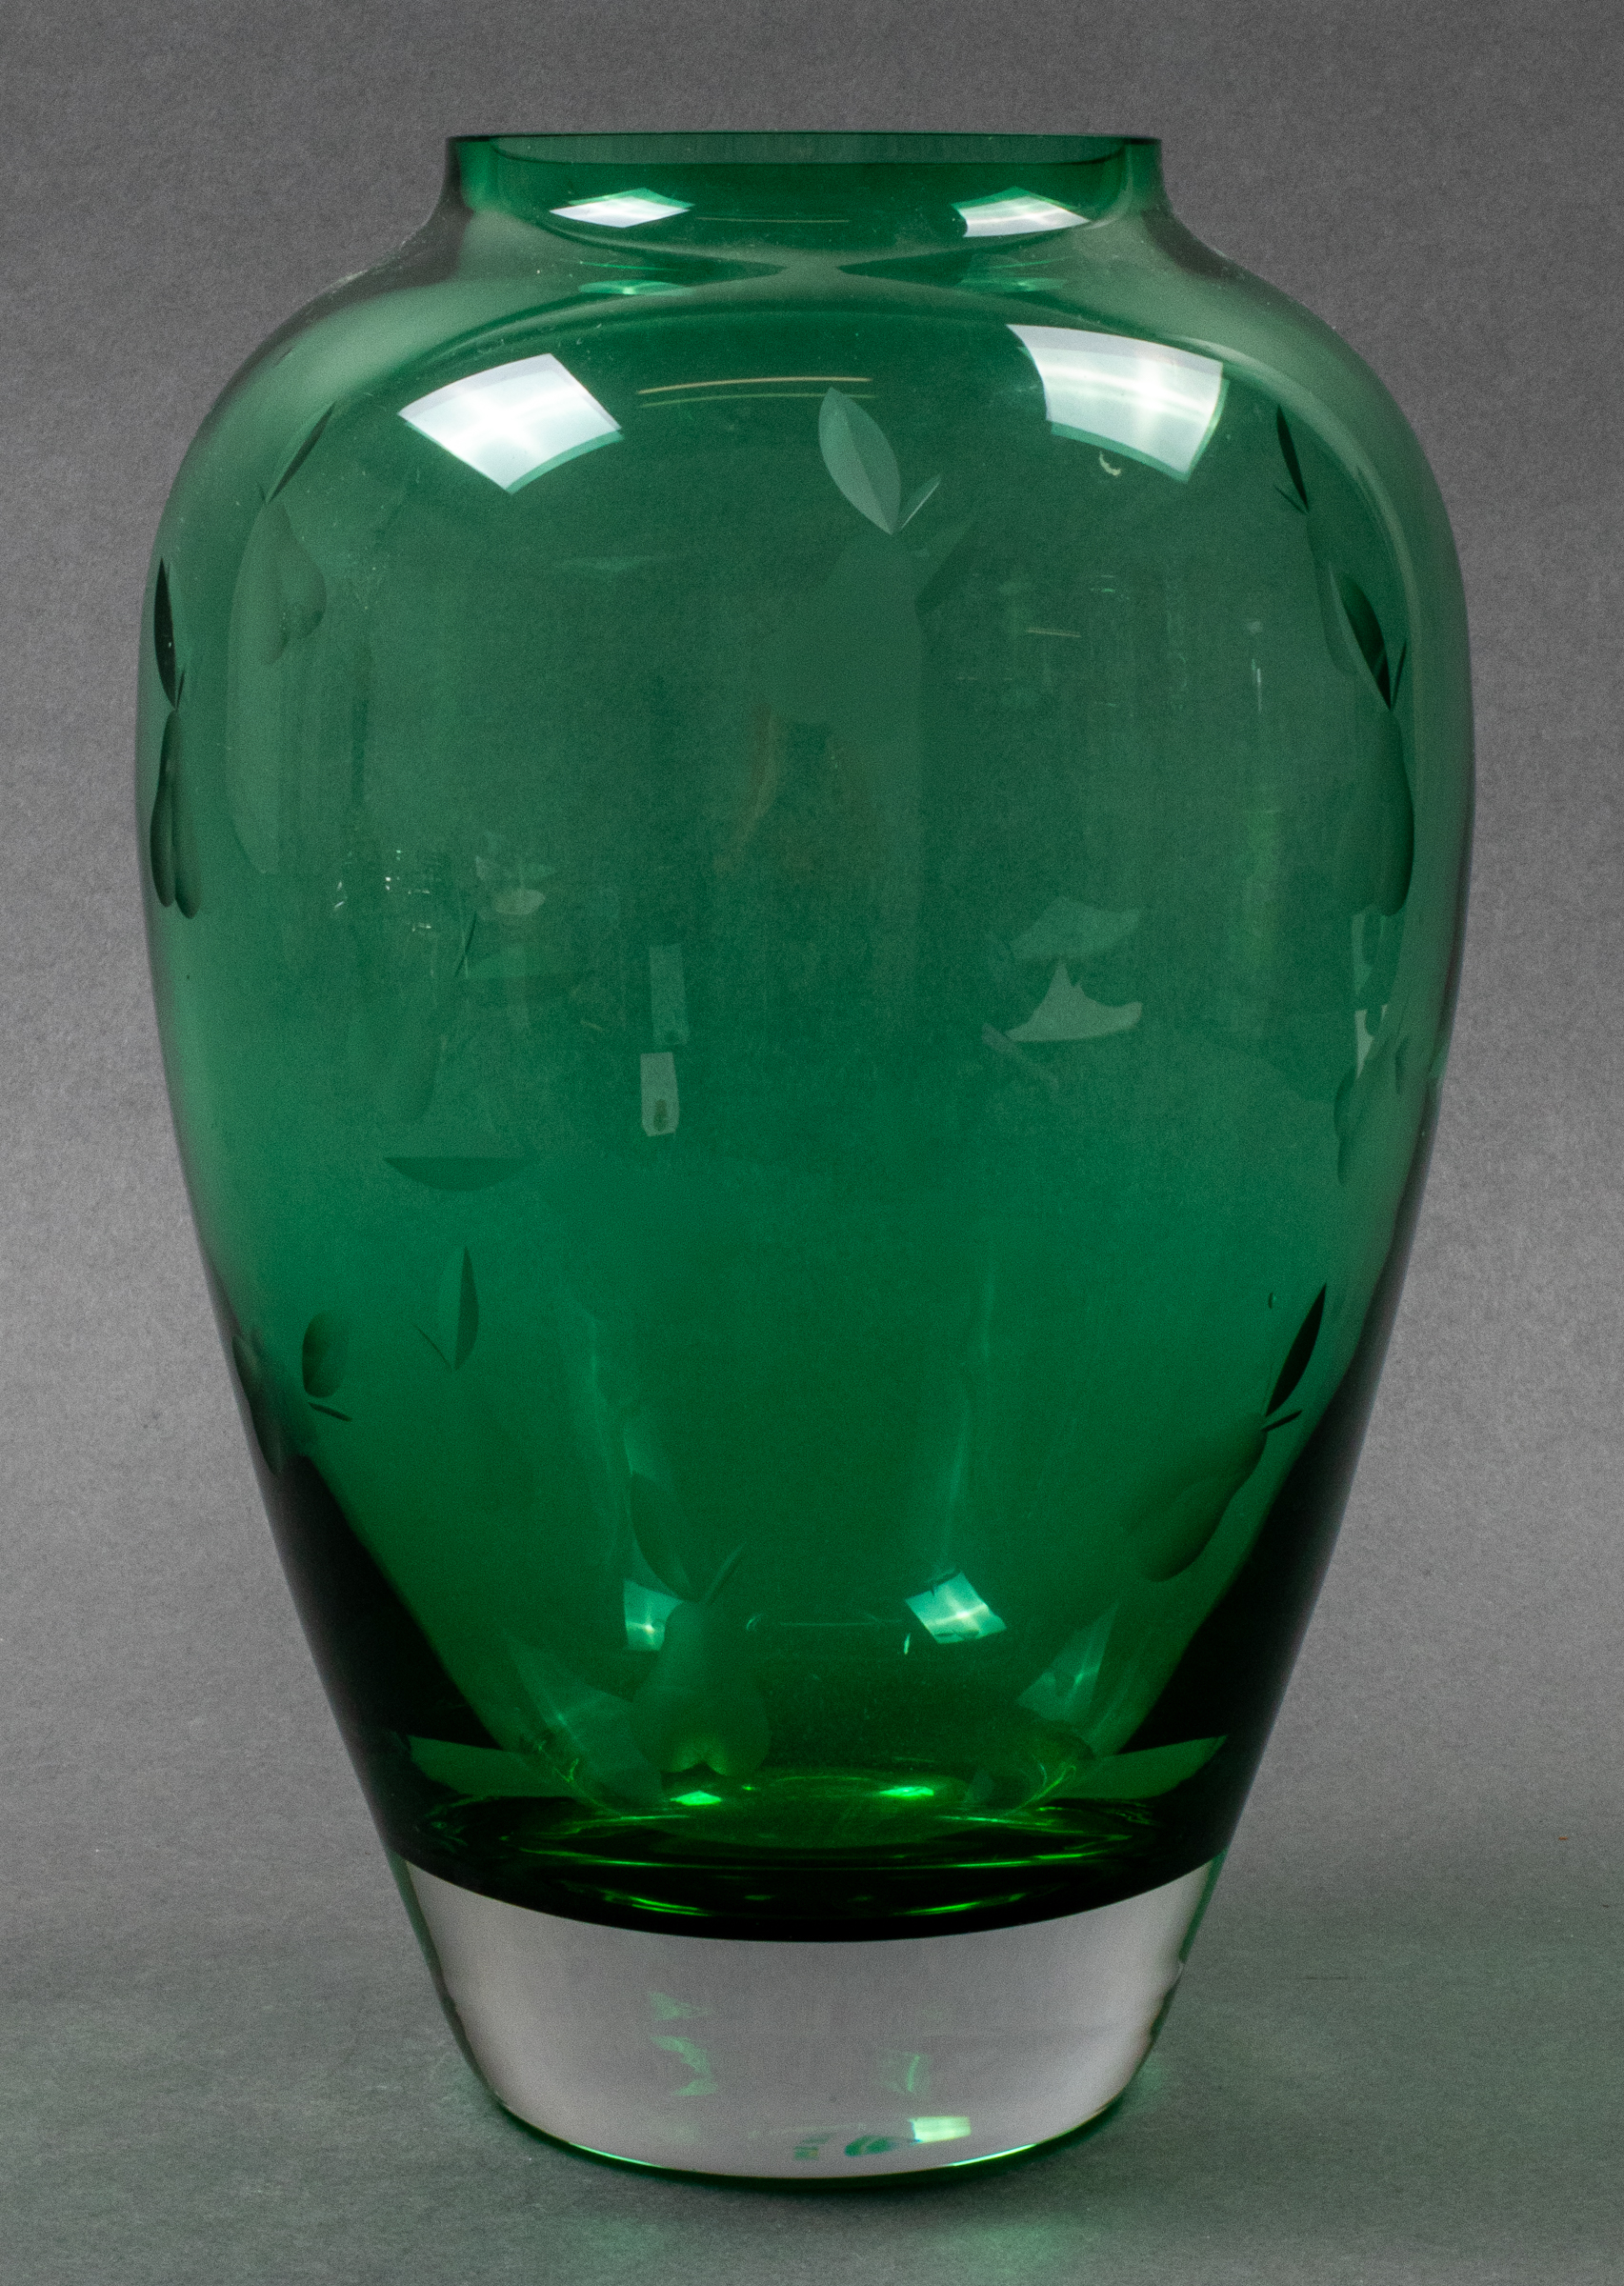 VILLEROY BOCH GREEN ART GLASS 3c3288